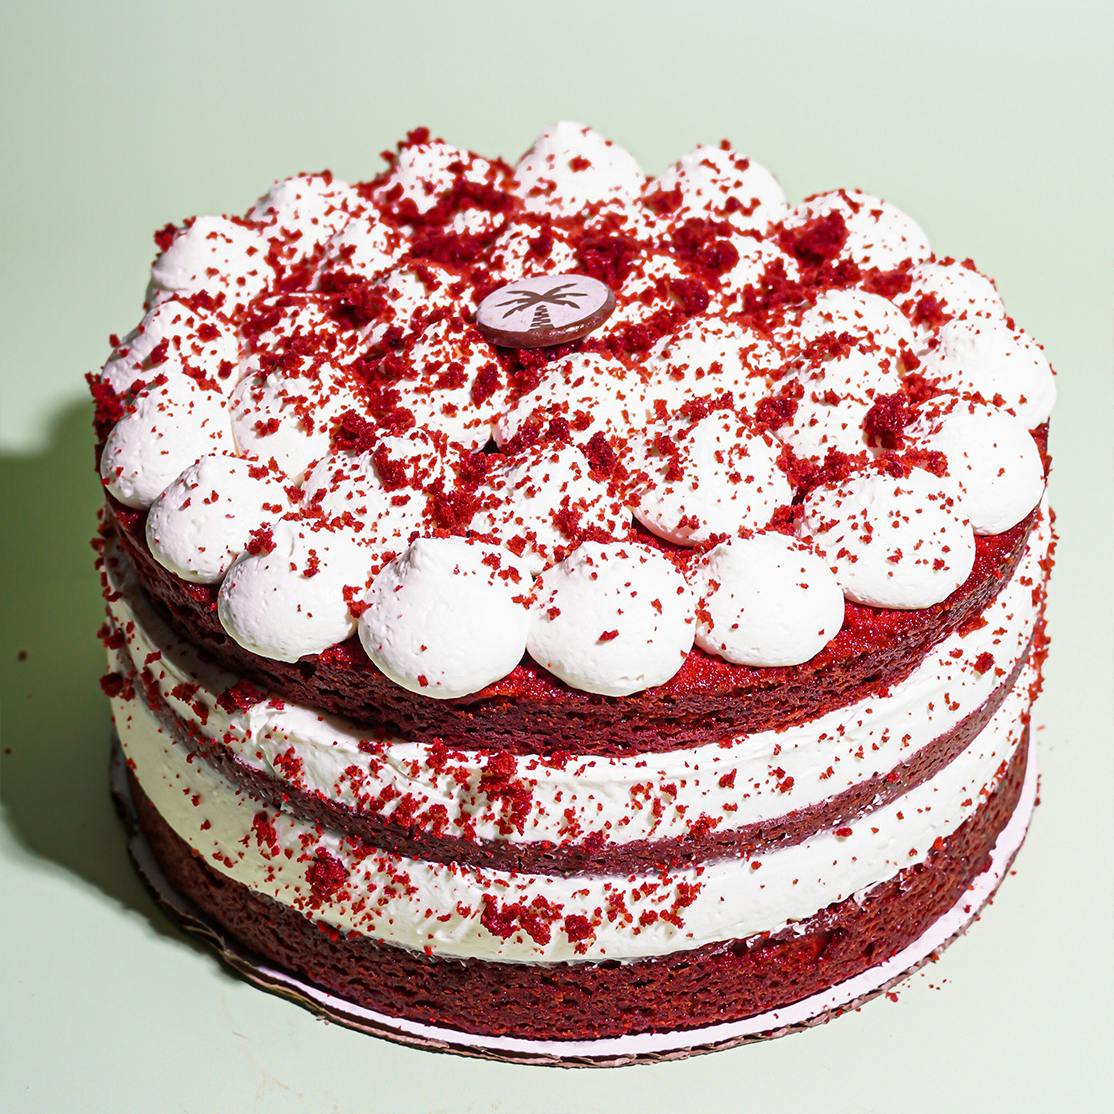 25 Red Velvet Desserts That Go Beyond Cake - Insanely Good